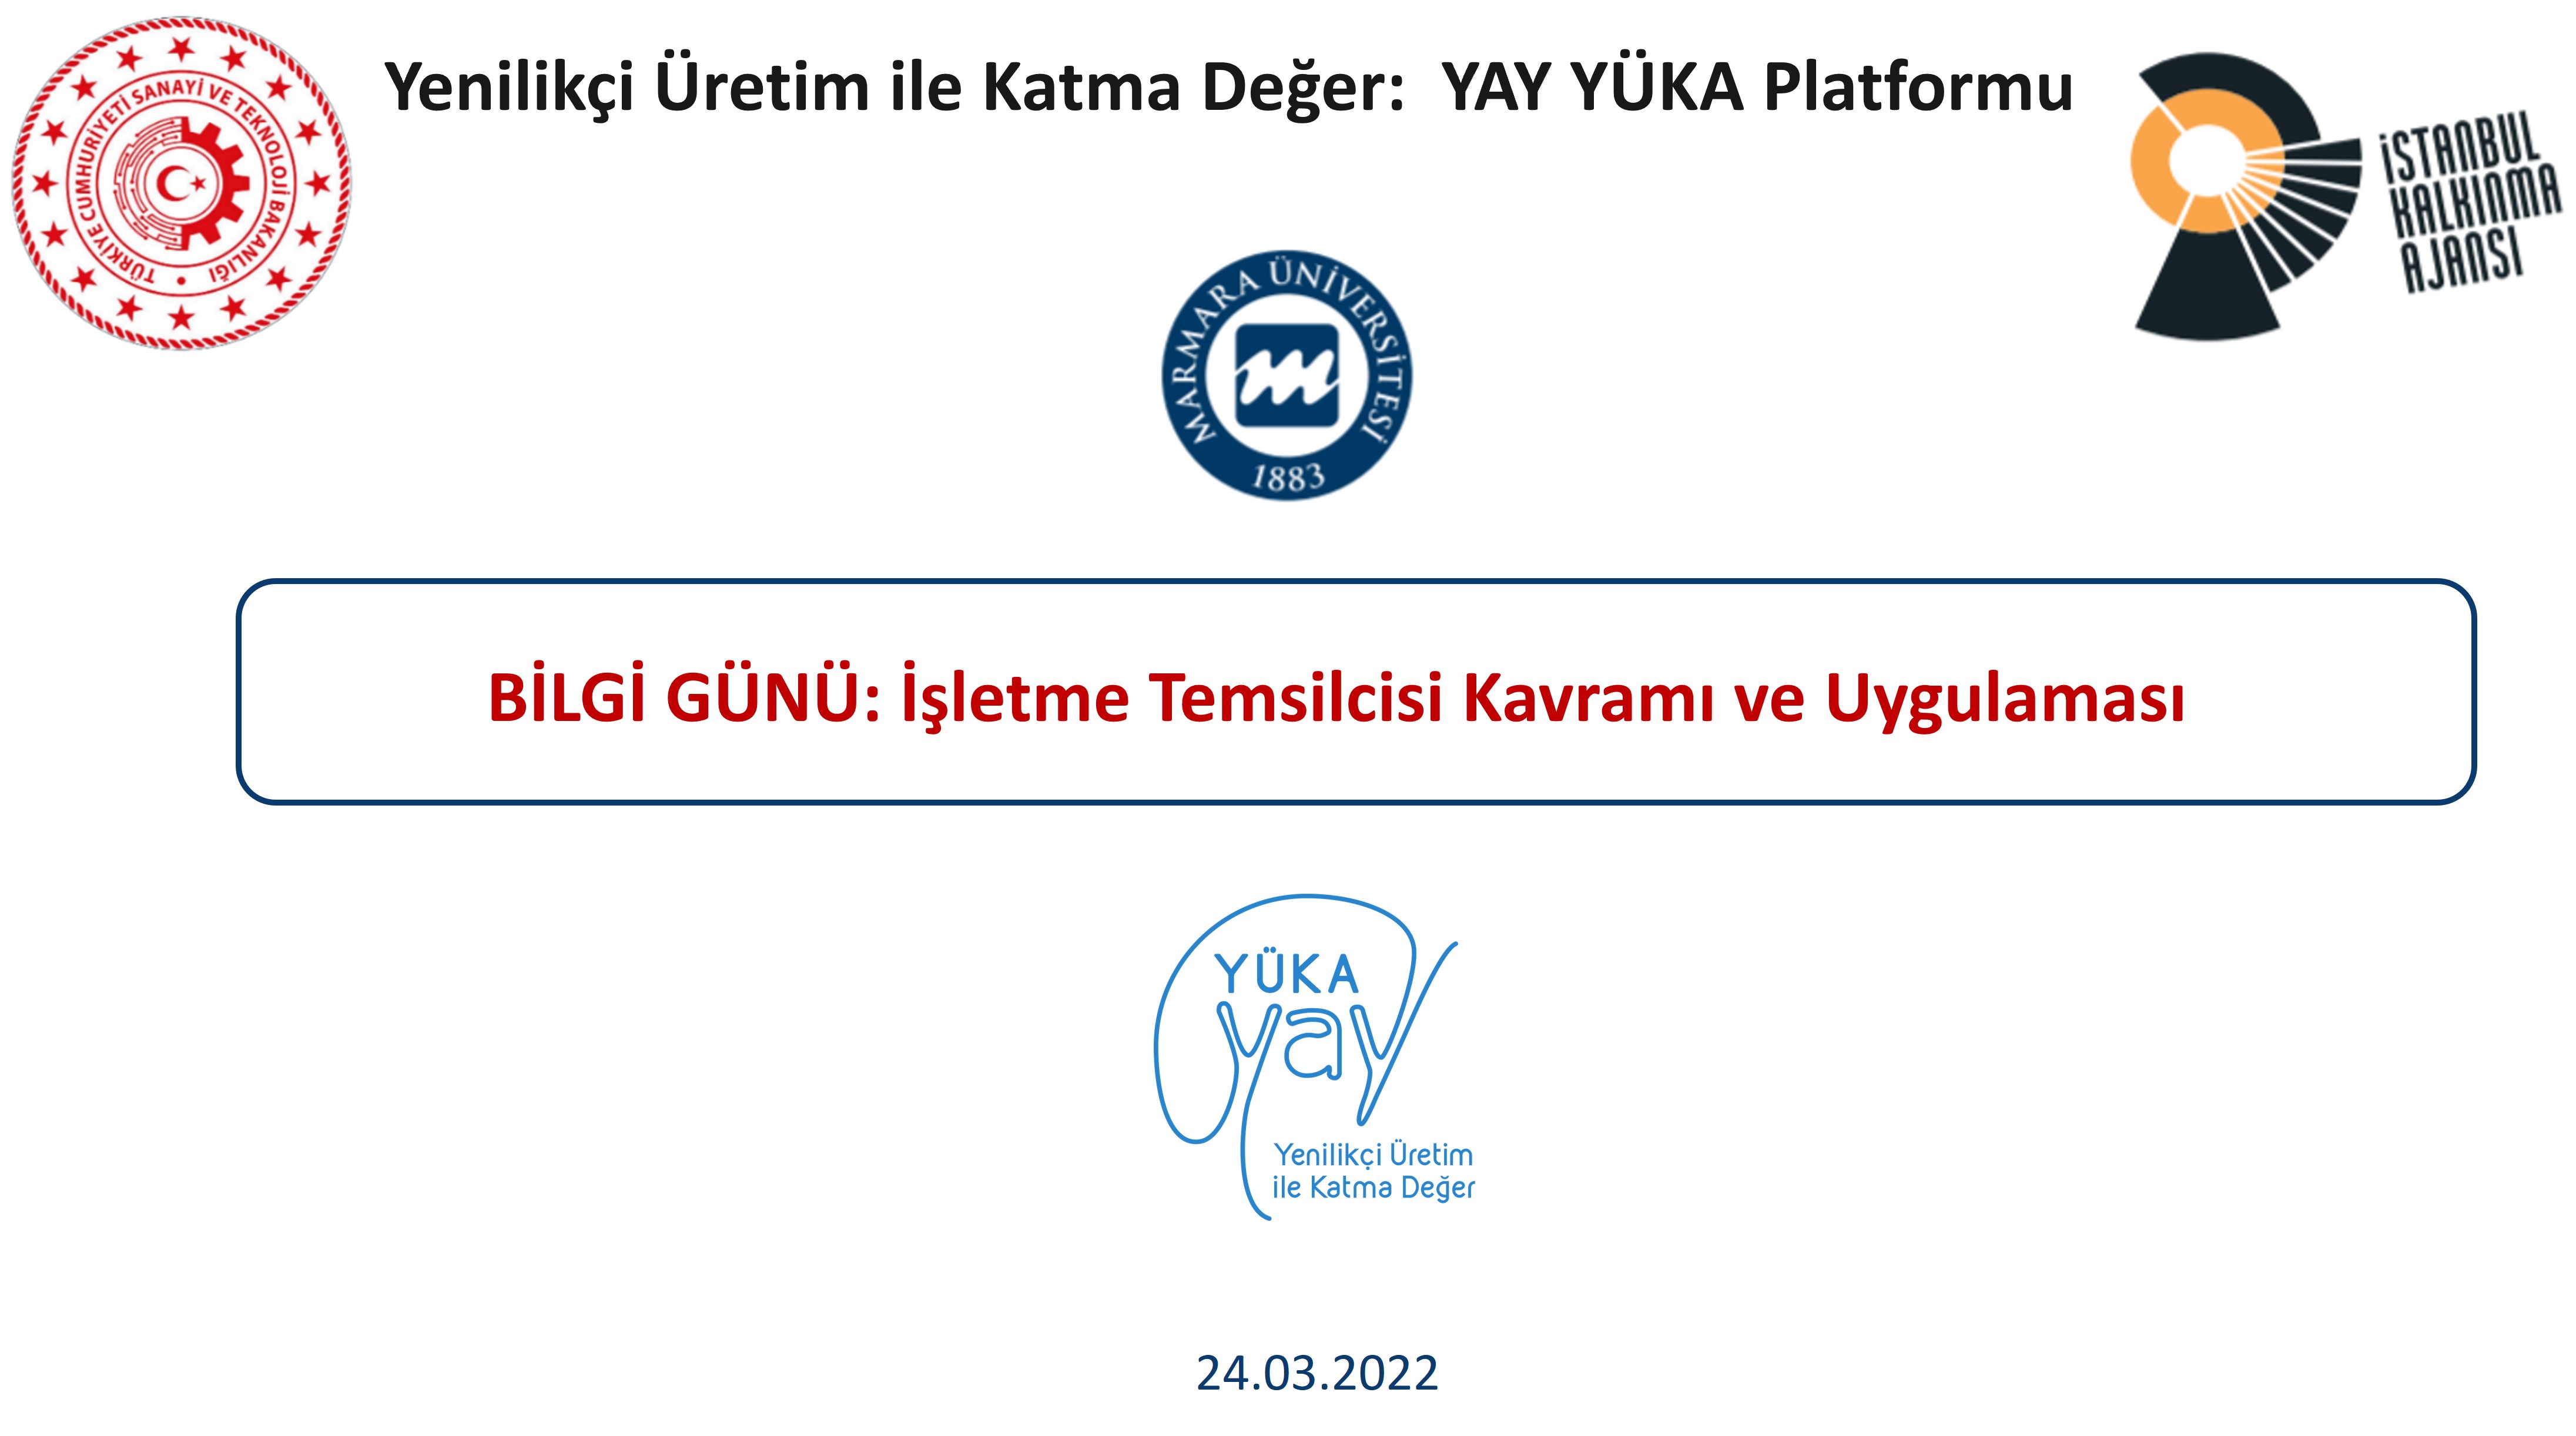 YAY-YÜKA Platformu ilk Bilgi Günü toplantısını gerçekleştirdi.